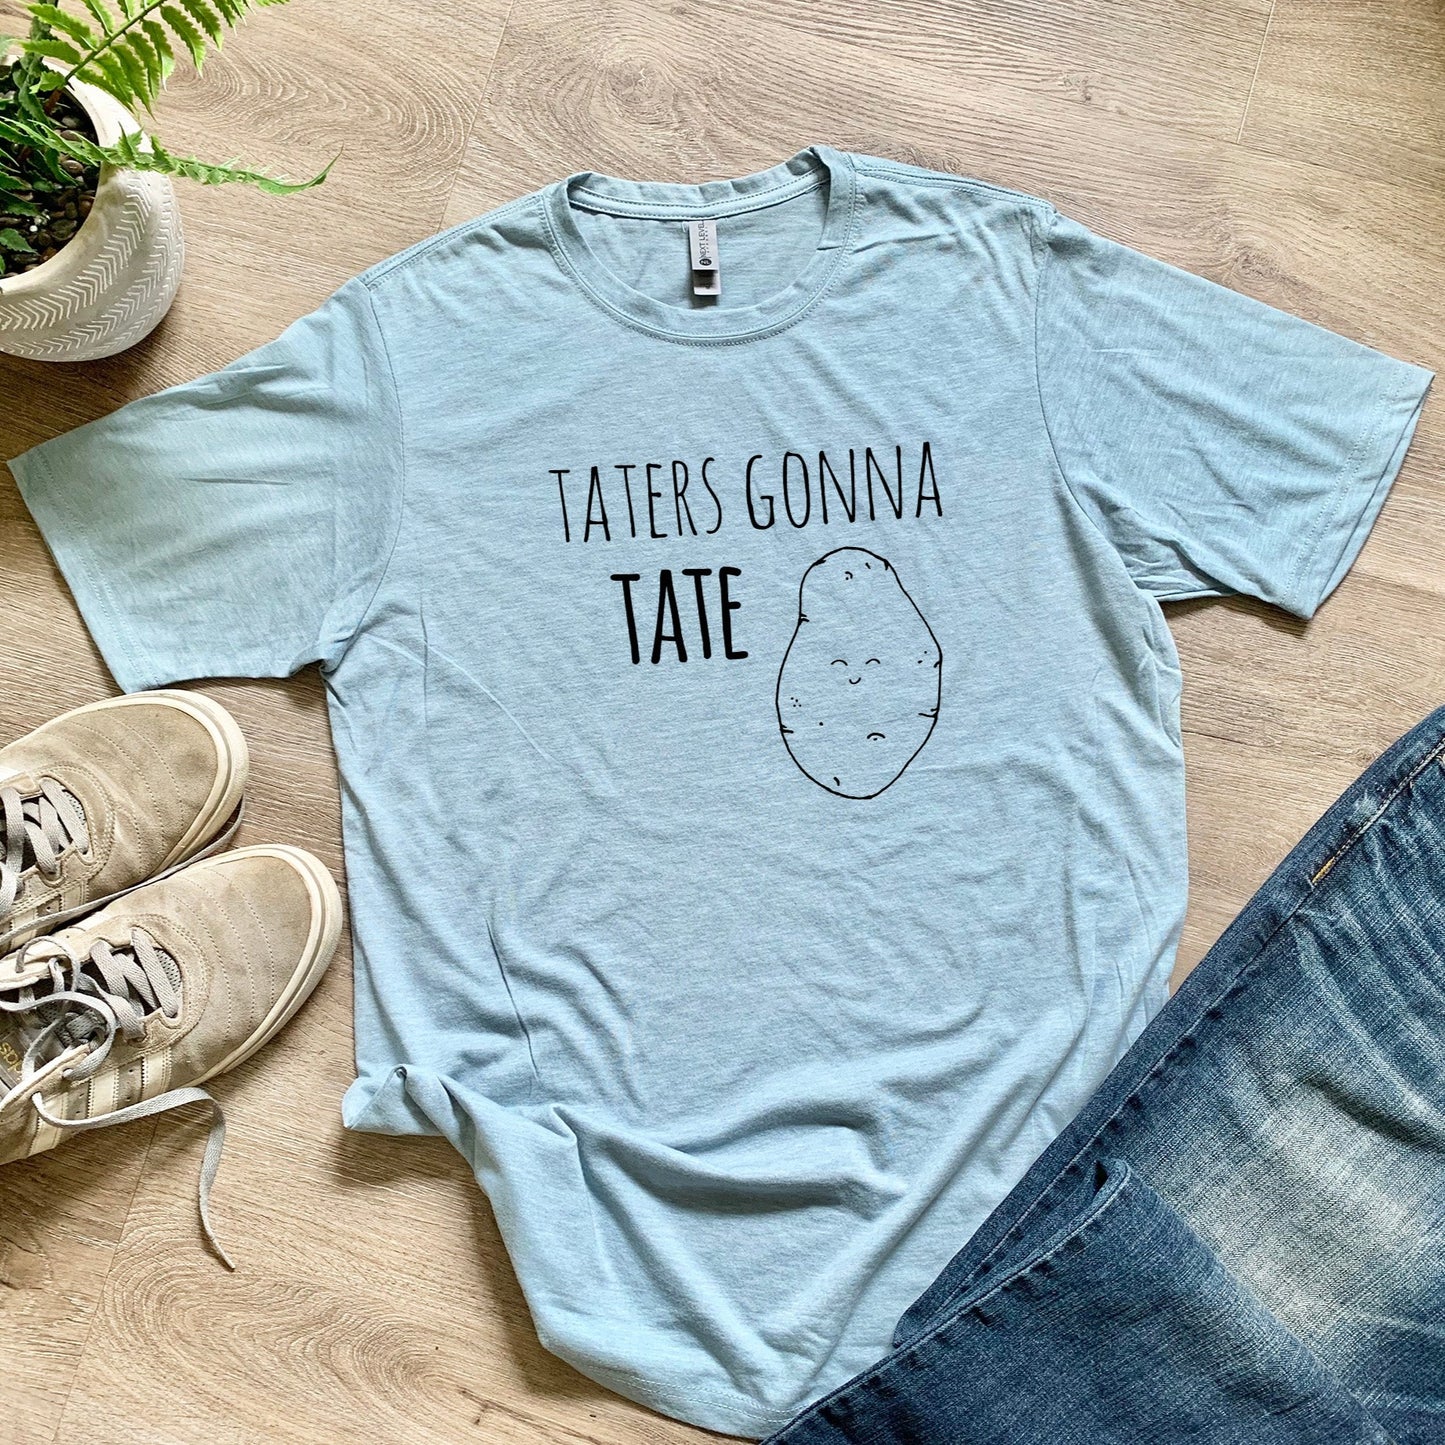 Taters Gonna Tate - Men's / Unisex Tee - Stonewash Blue or Sage